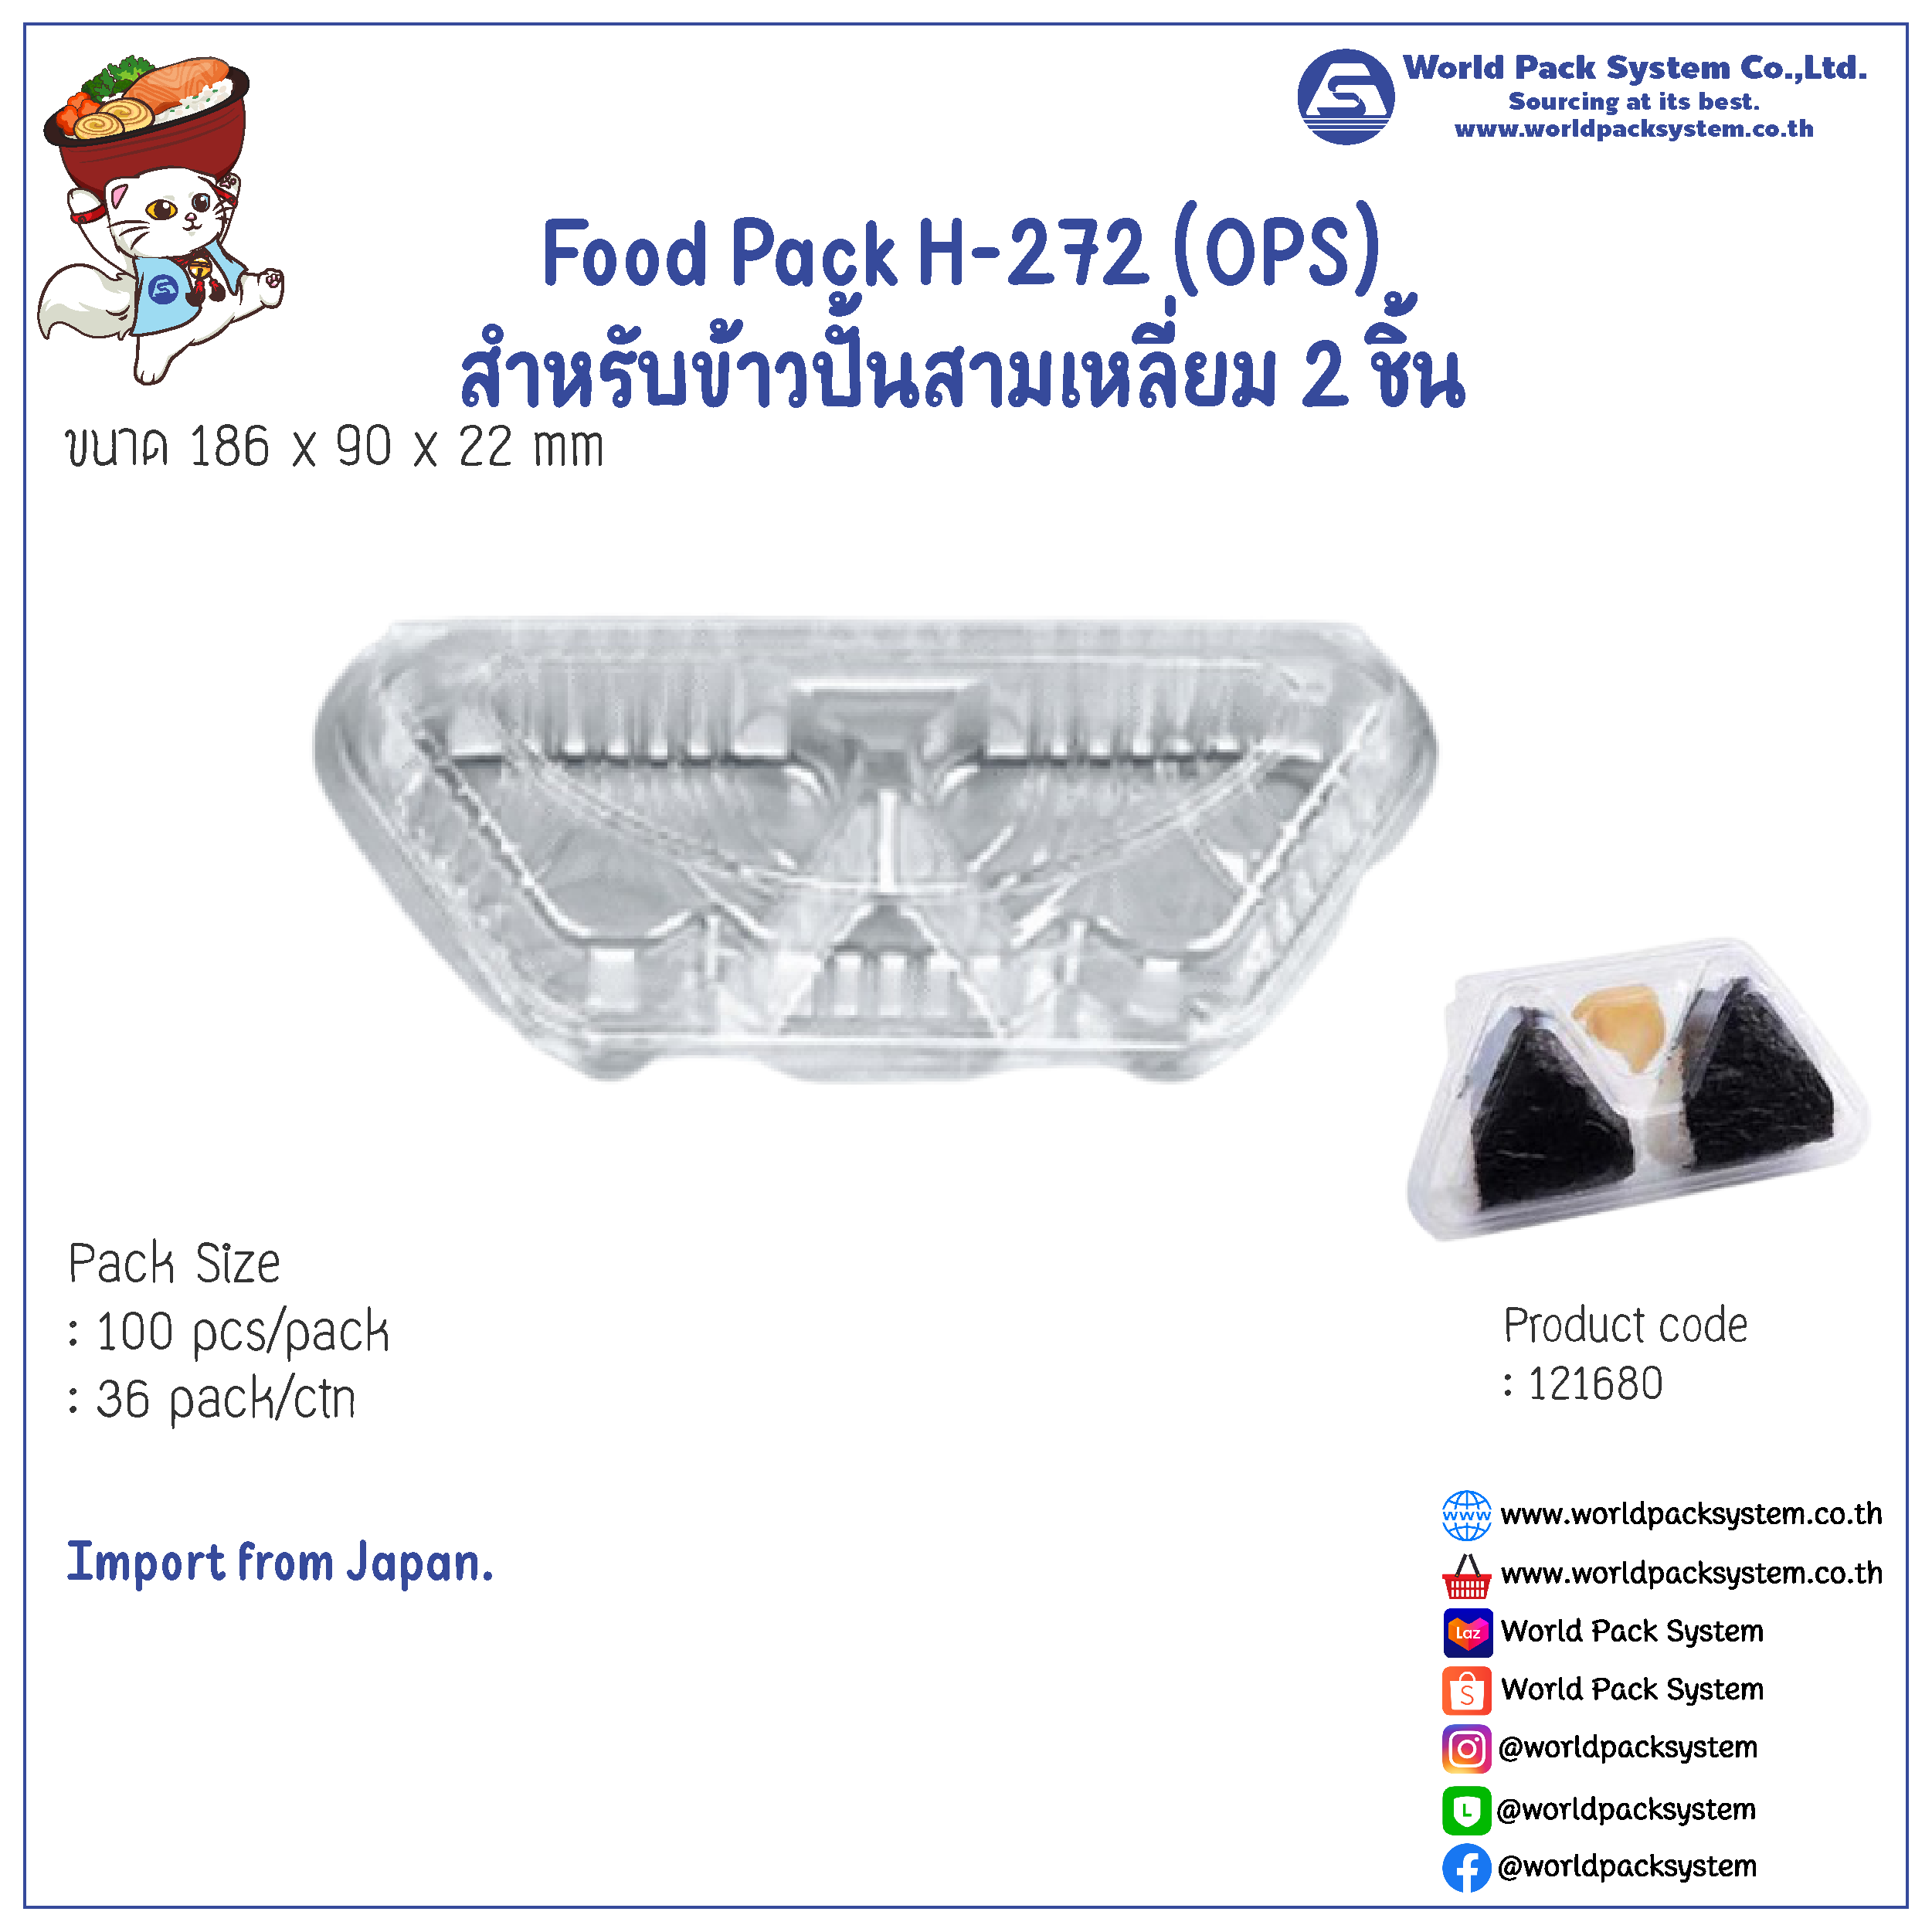 Food Pack H-272 (OPS) For Onigiri 2 pcs (100 pcs)